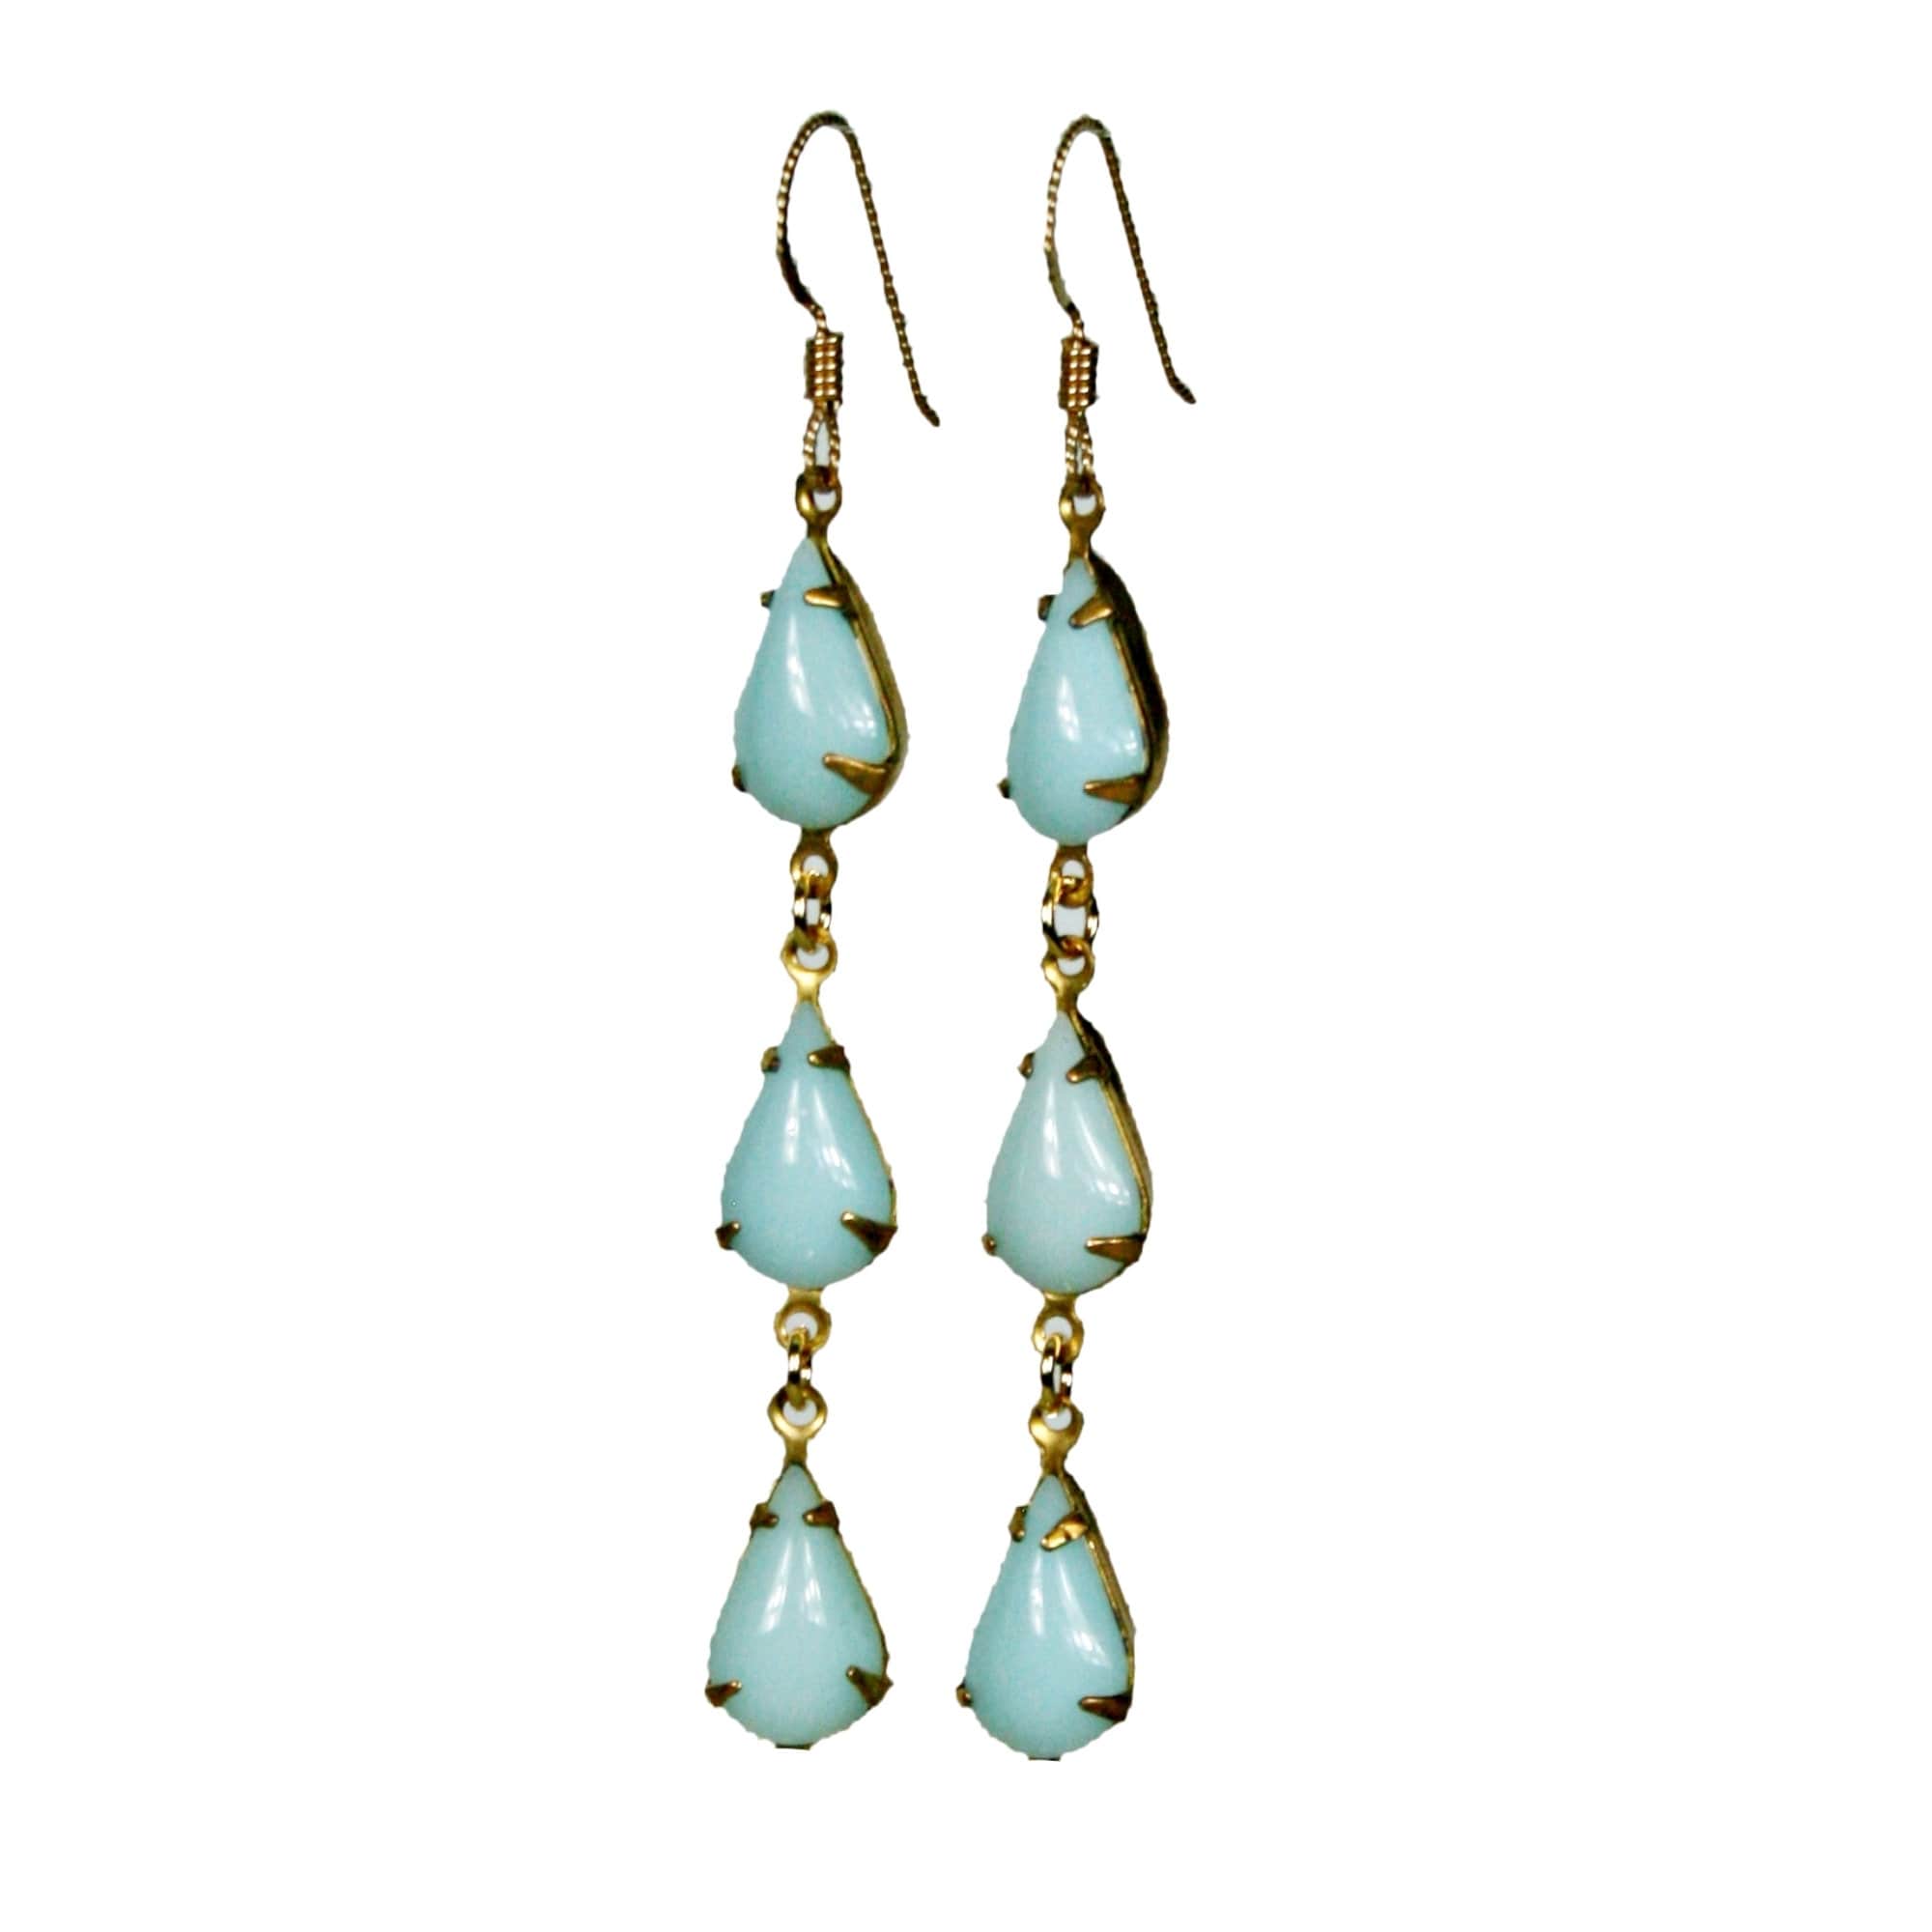 Art Deco Long Drop Earrings Blue Turquoise Teardrop Gold Stud Vintage Style Gift 